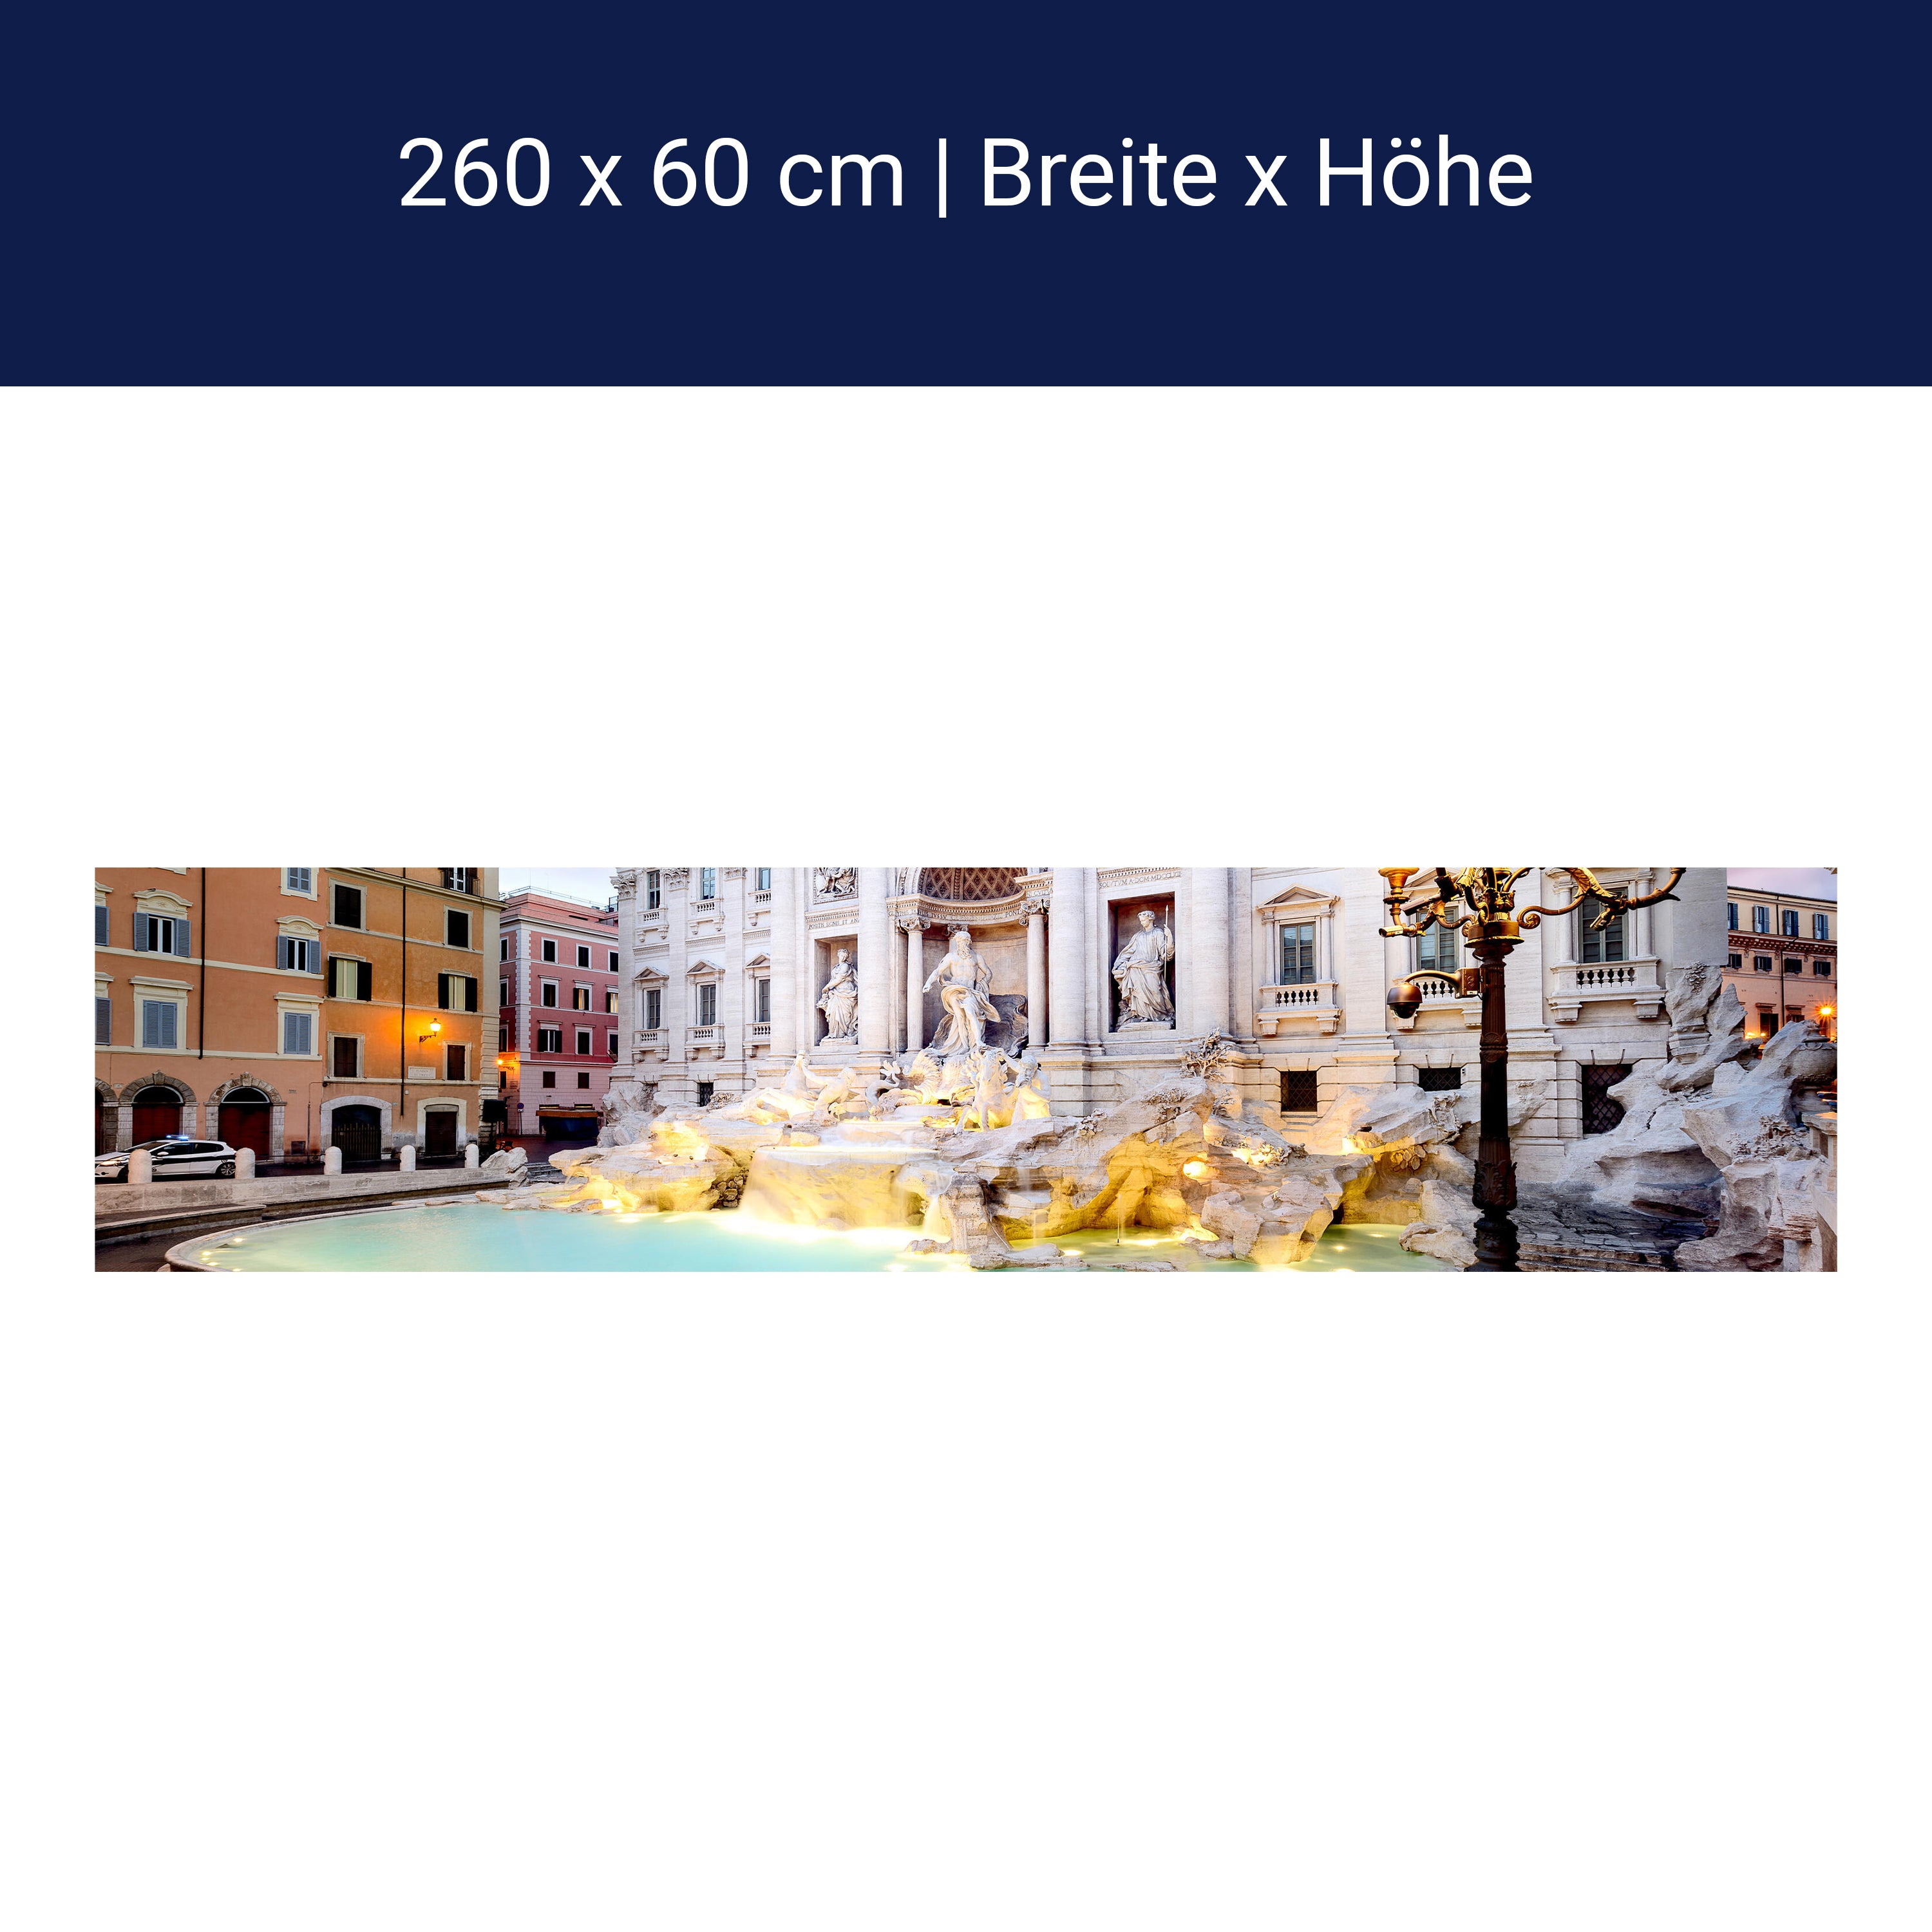 Kitchen splashback Trevi Fountain, Rome M1024